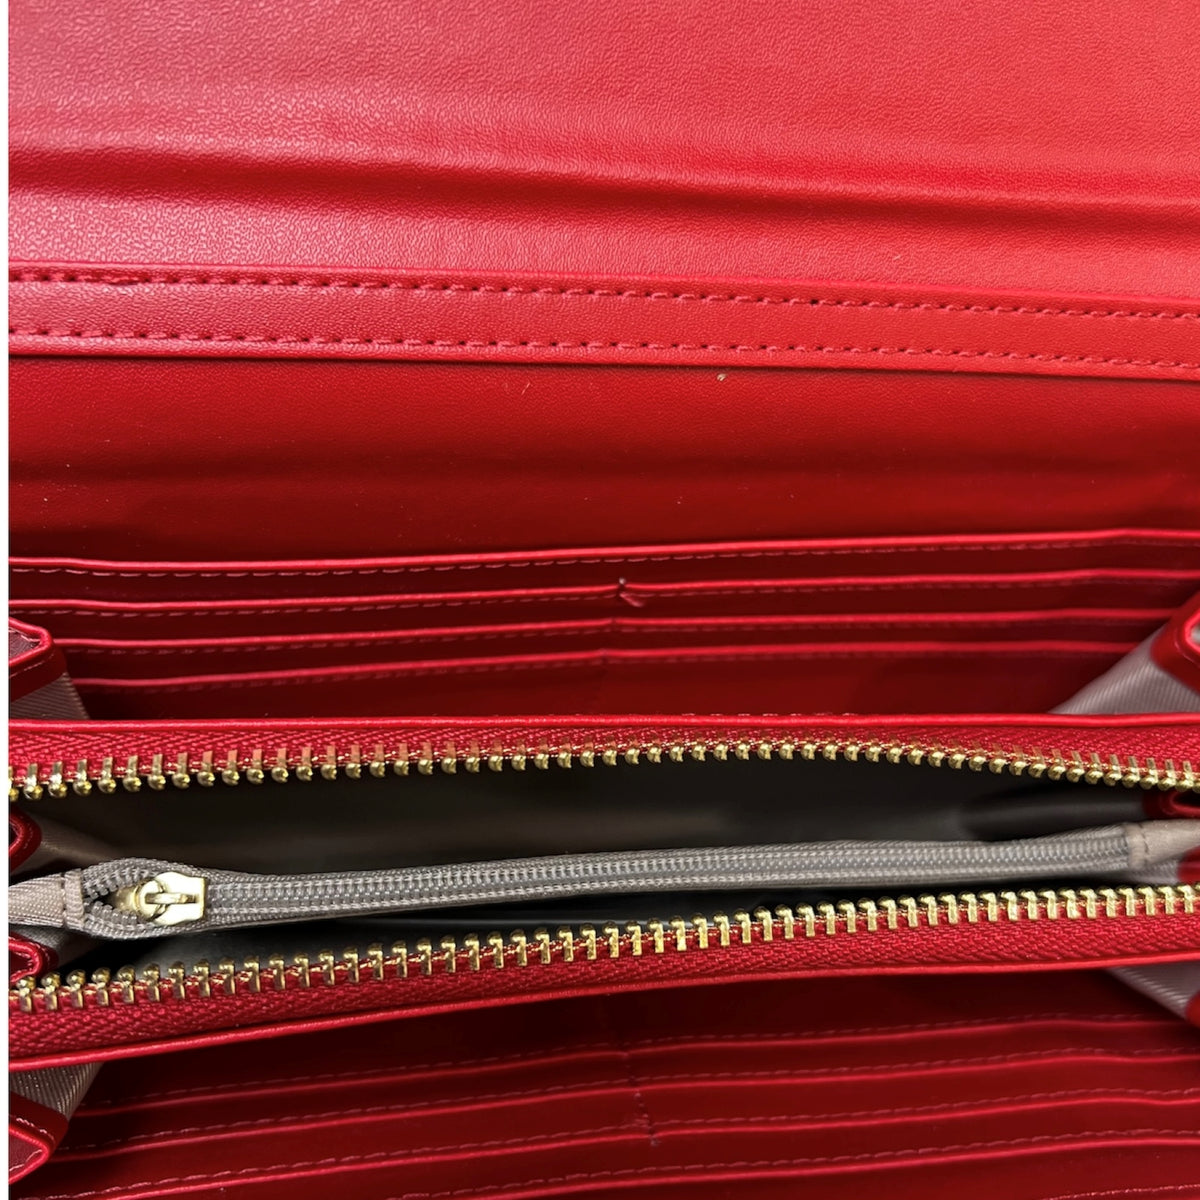 Bienvenue dans le monde audacieux de C'EST ELLE! Ce portefeuille avec ganse rouge offre une sensation de luxe et de risque; son design beau vous permettra de prendre le contrôle de votre look. Vivez votre aventure avec style et audace!